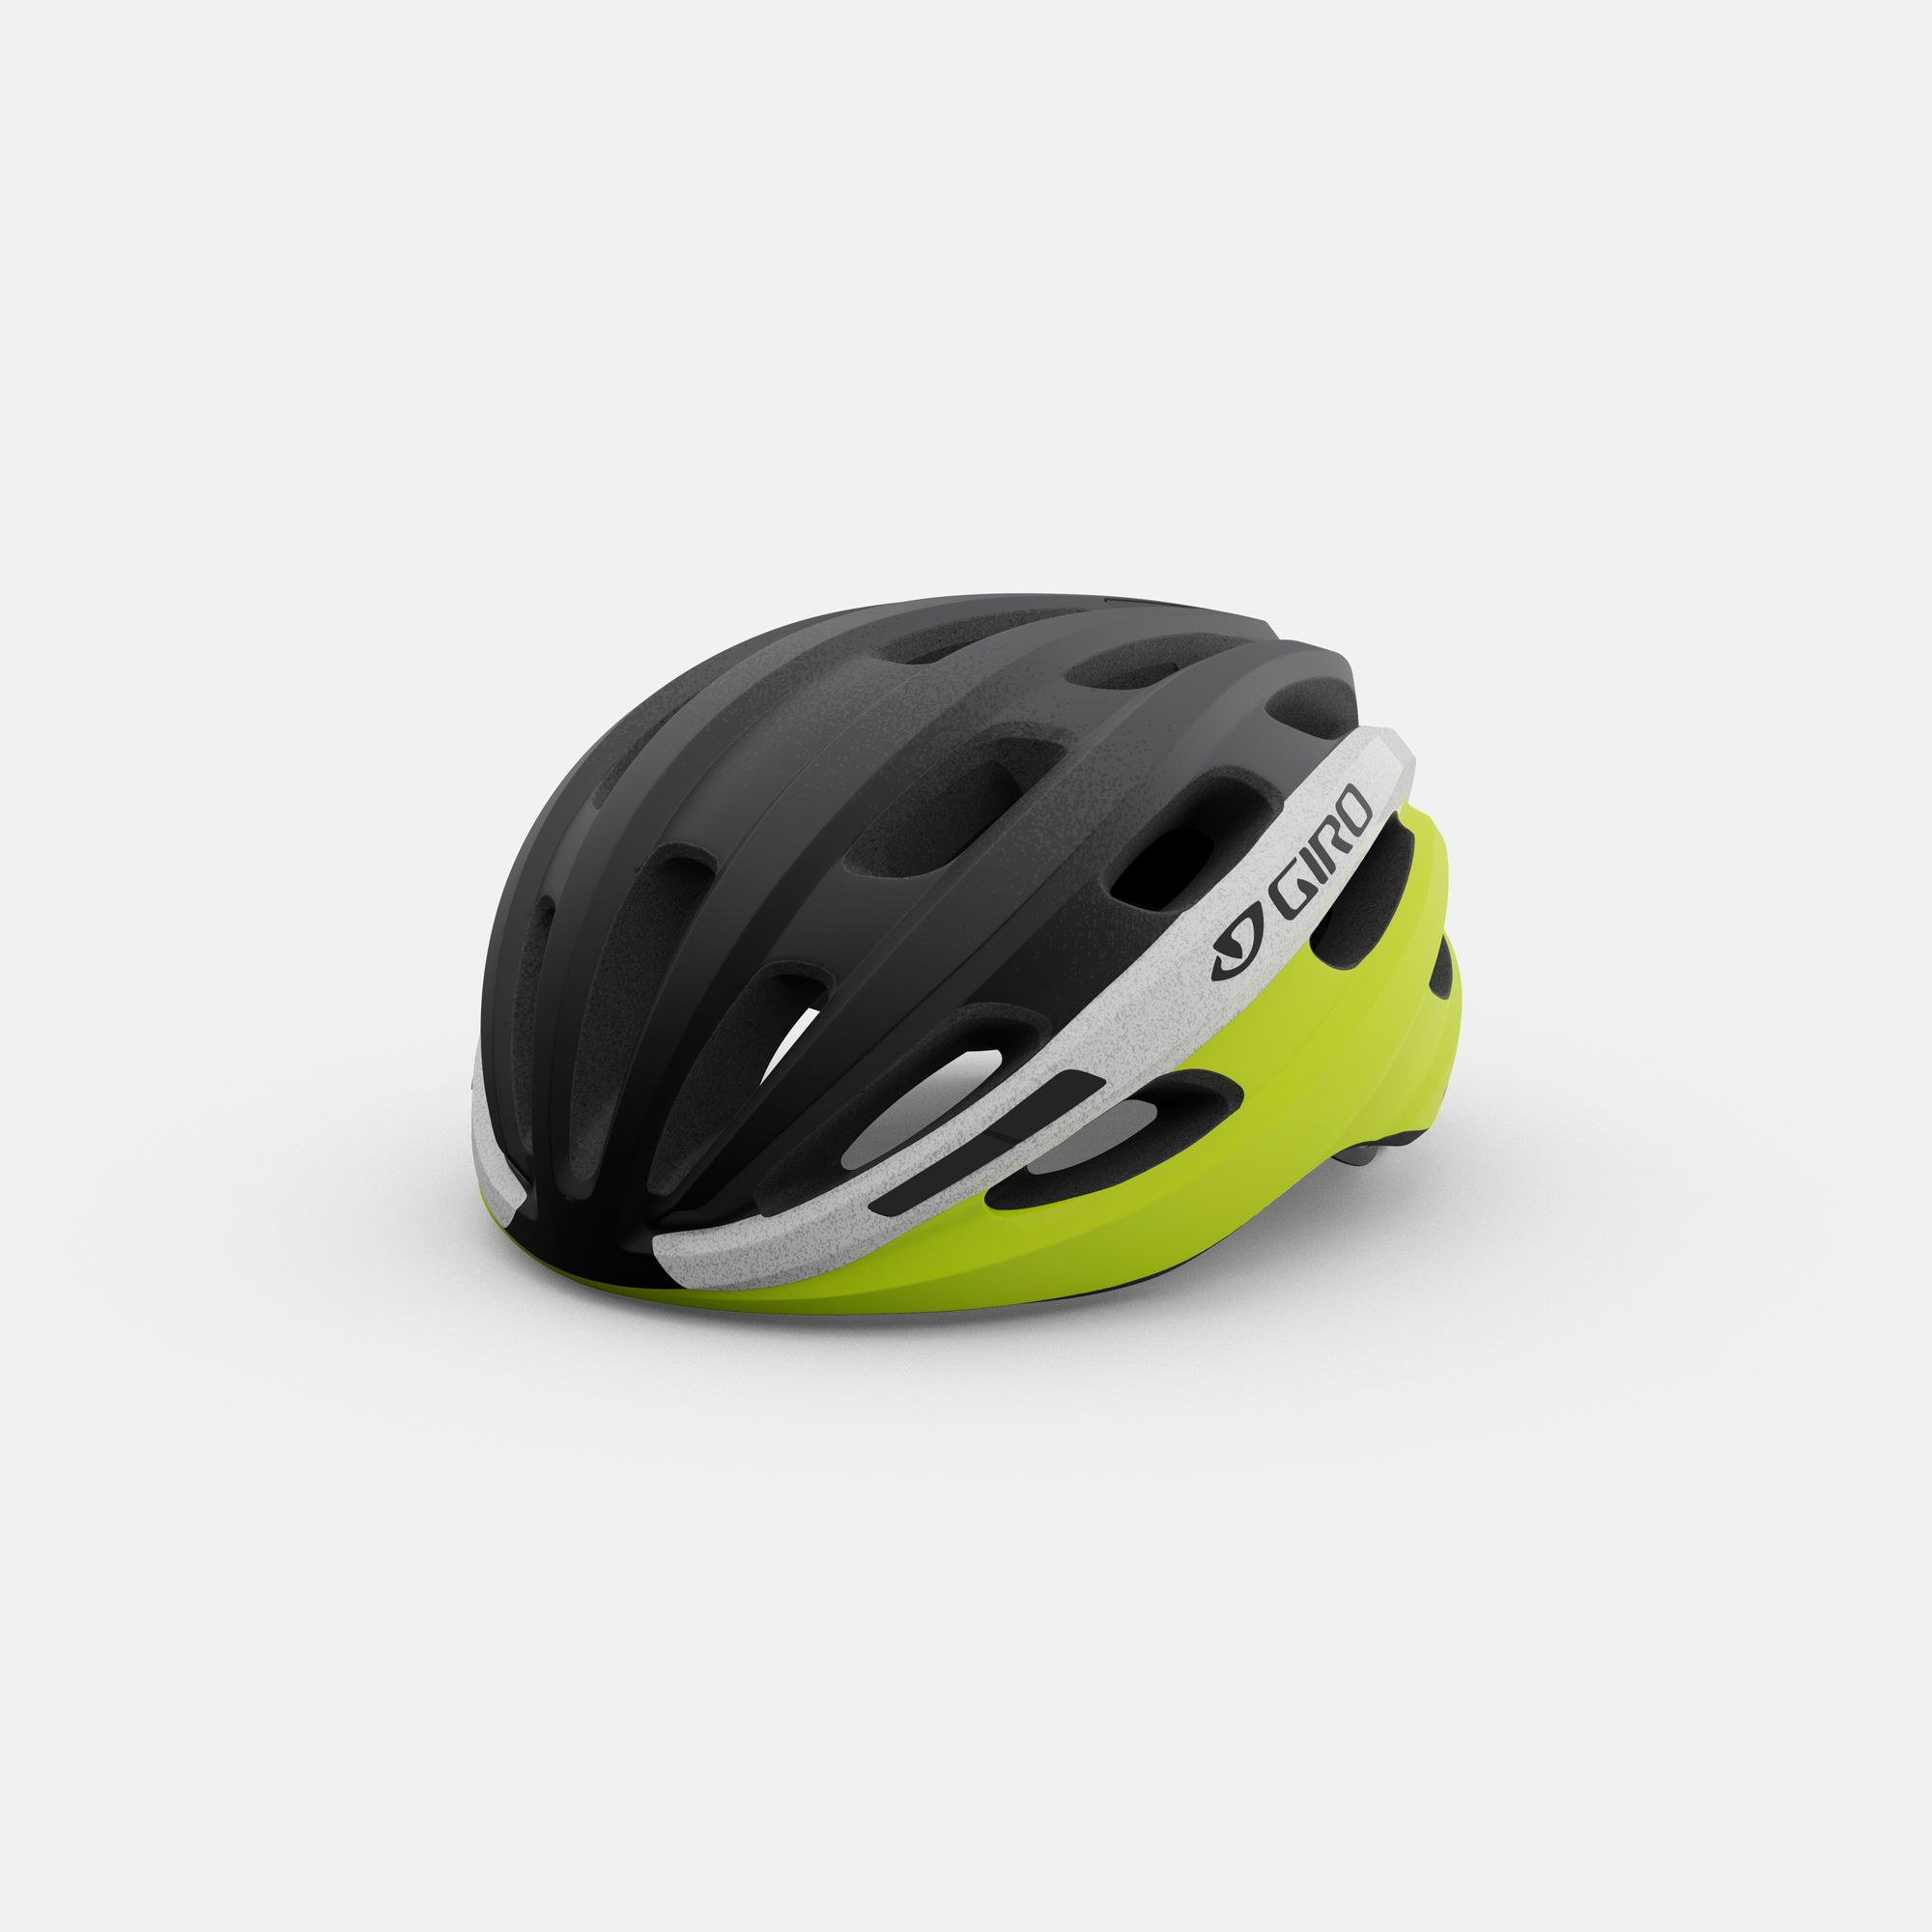 black and yellow bike helmet